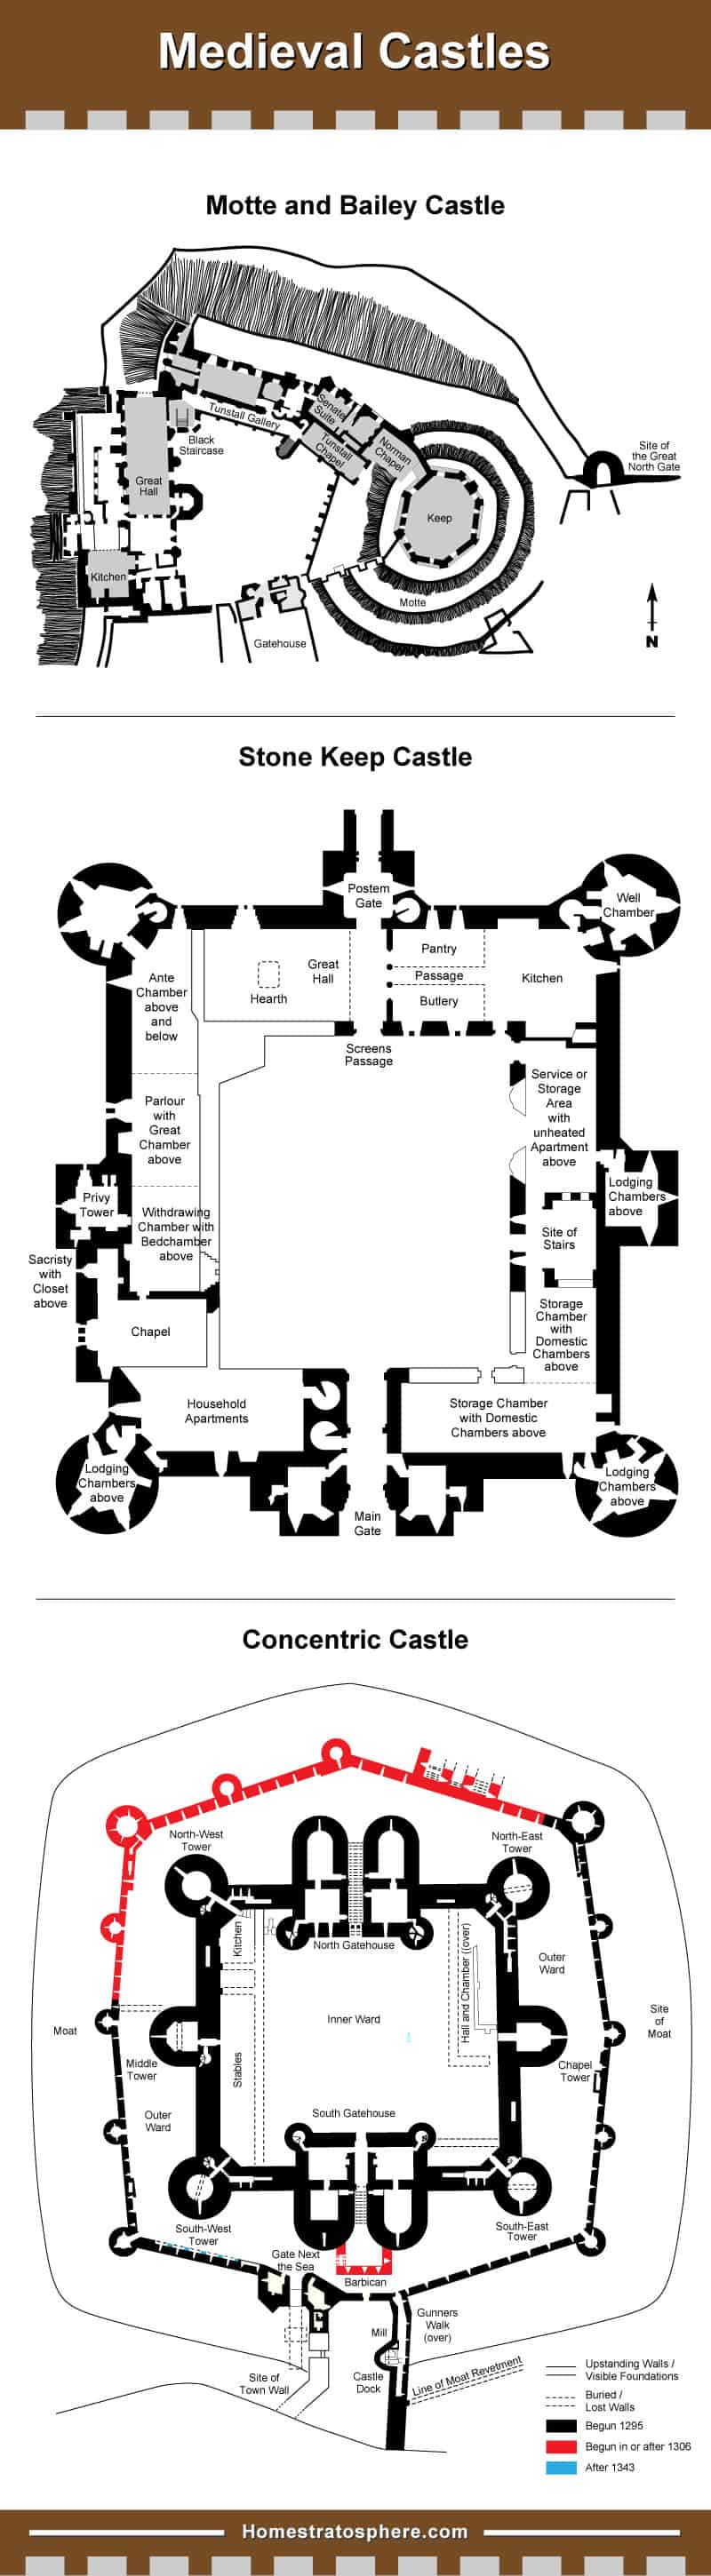 中世纪城堡图布局